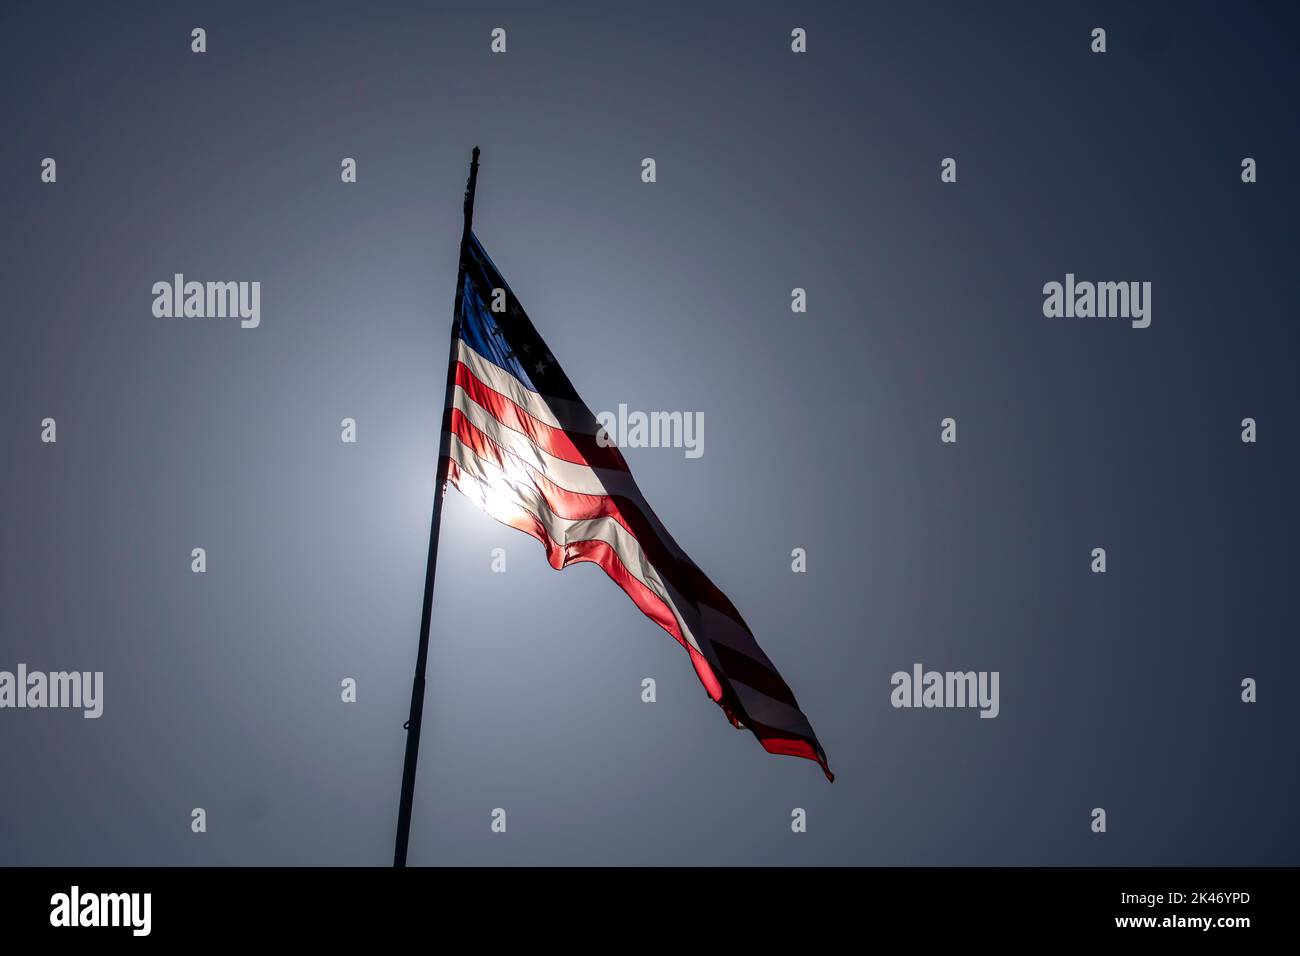 Des étoiles américaines et un drapeau rayé illuminés par le soleil soufflent dans le vent par un jour lumineux Banque D'Images